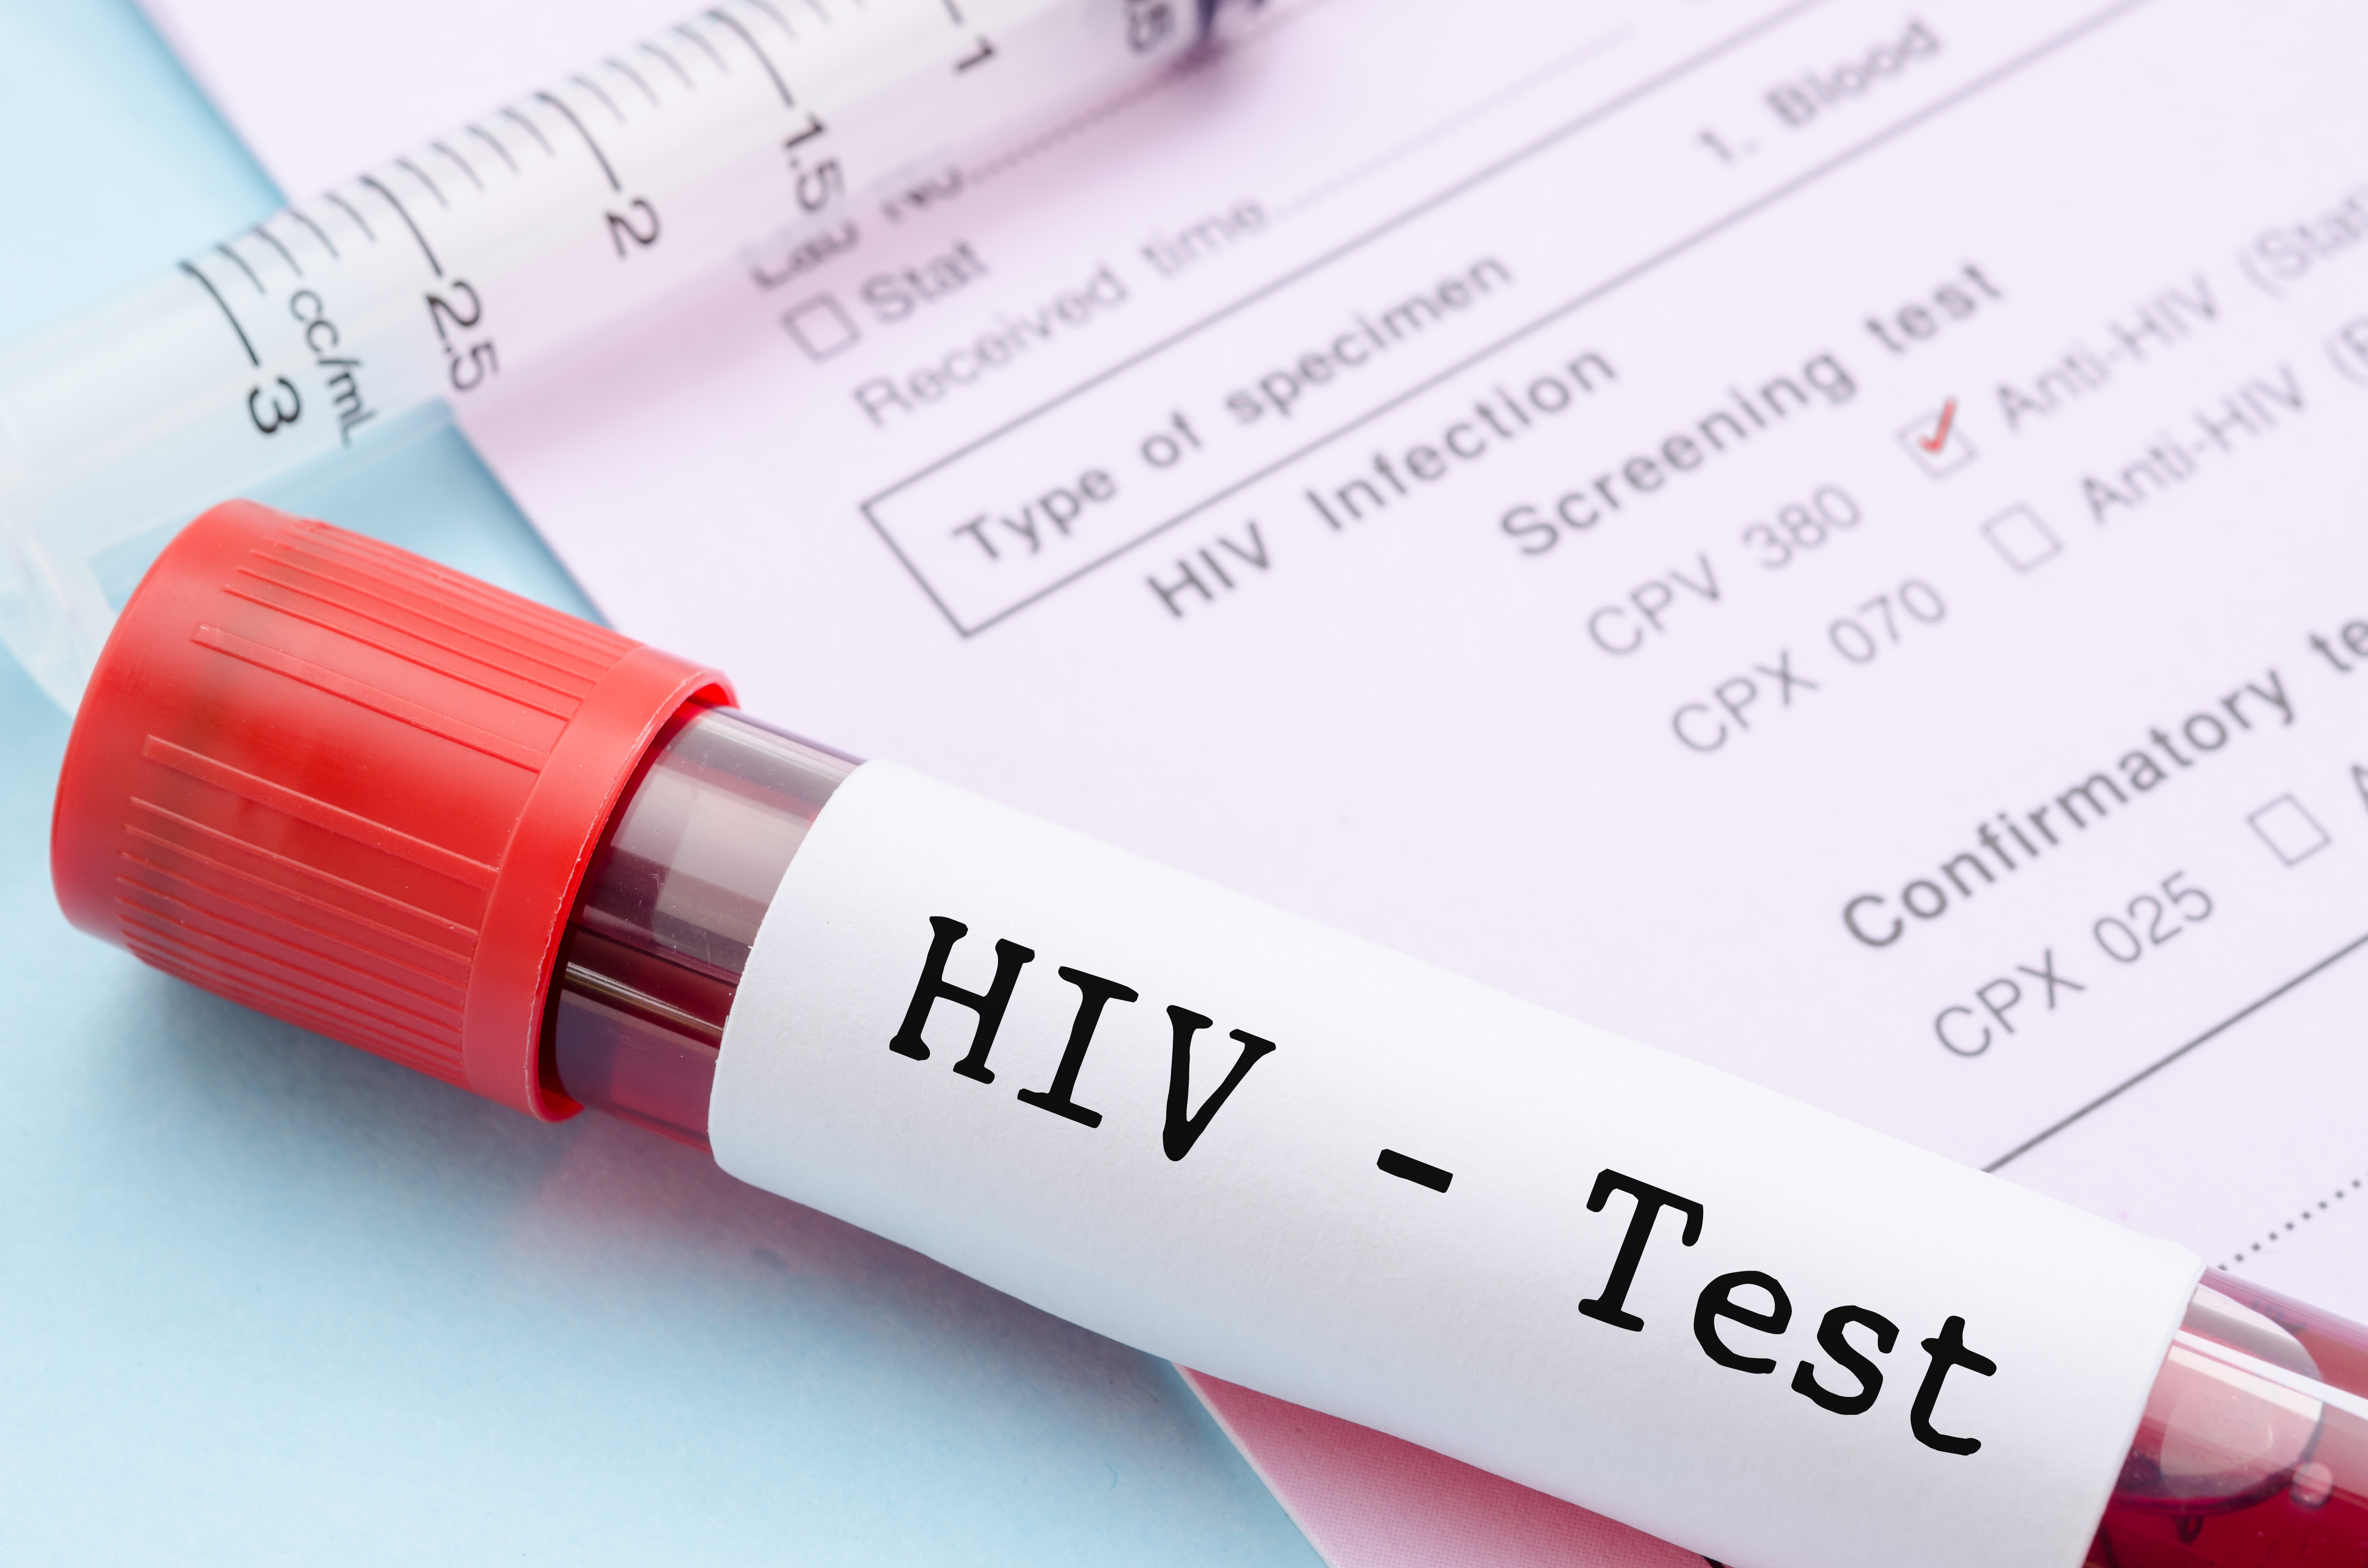 HIV test kiti eczanede satılır mı?